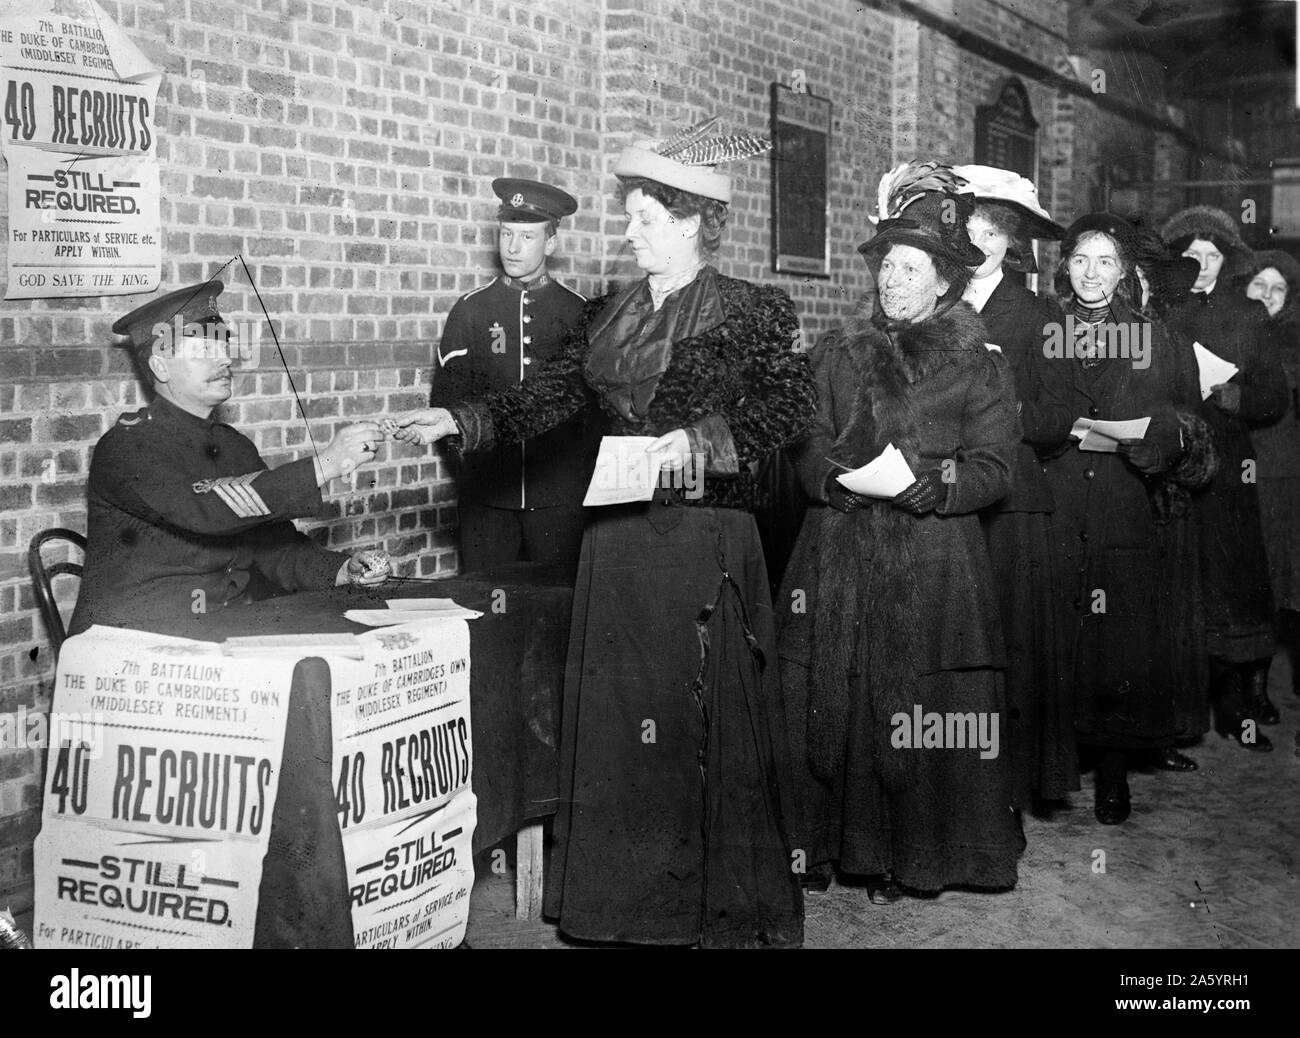 Les femmes s'enrôler pour la guerre. L'Angleterre de la Première Guerre mondiale, 1915. Banque D'Images